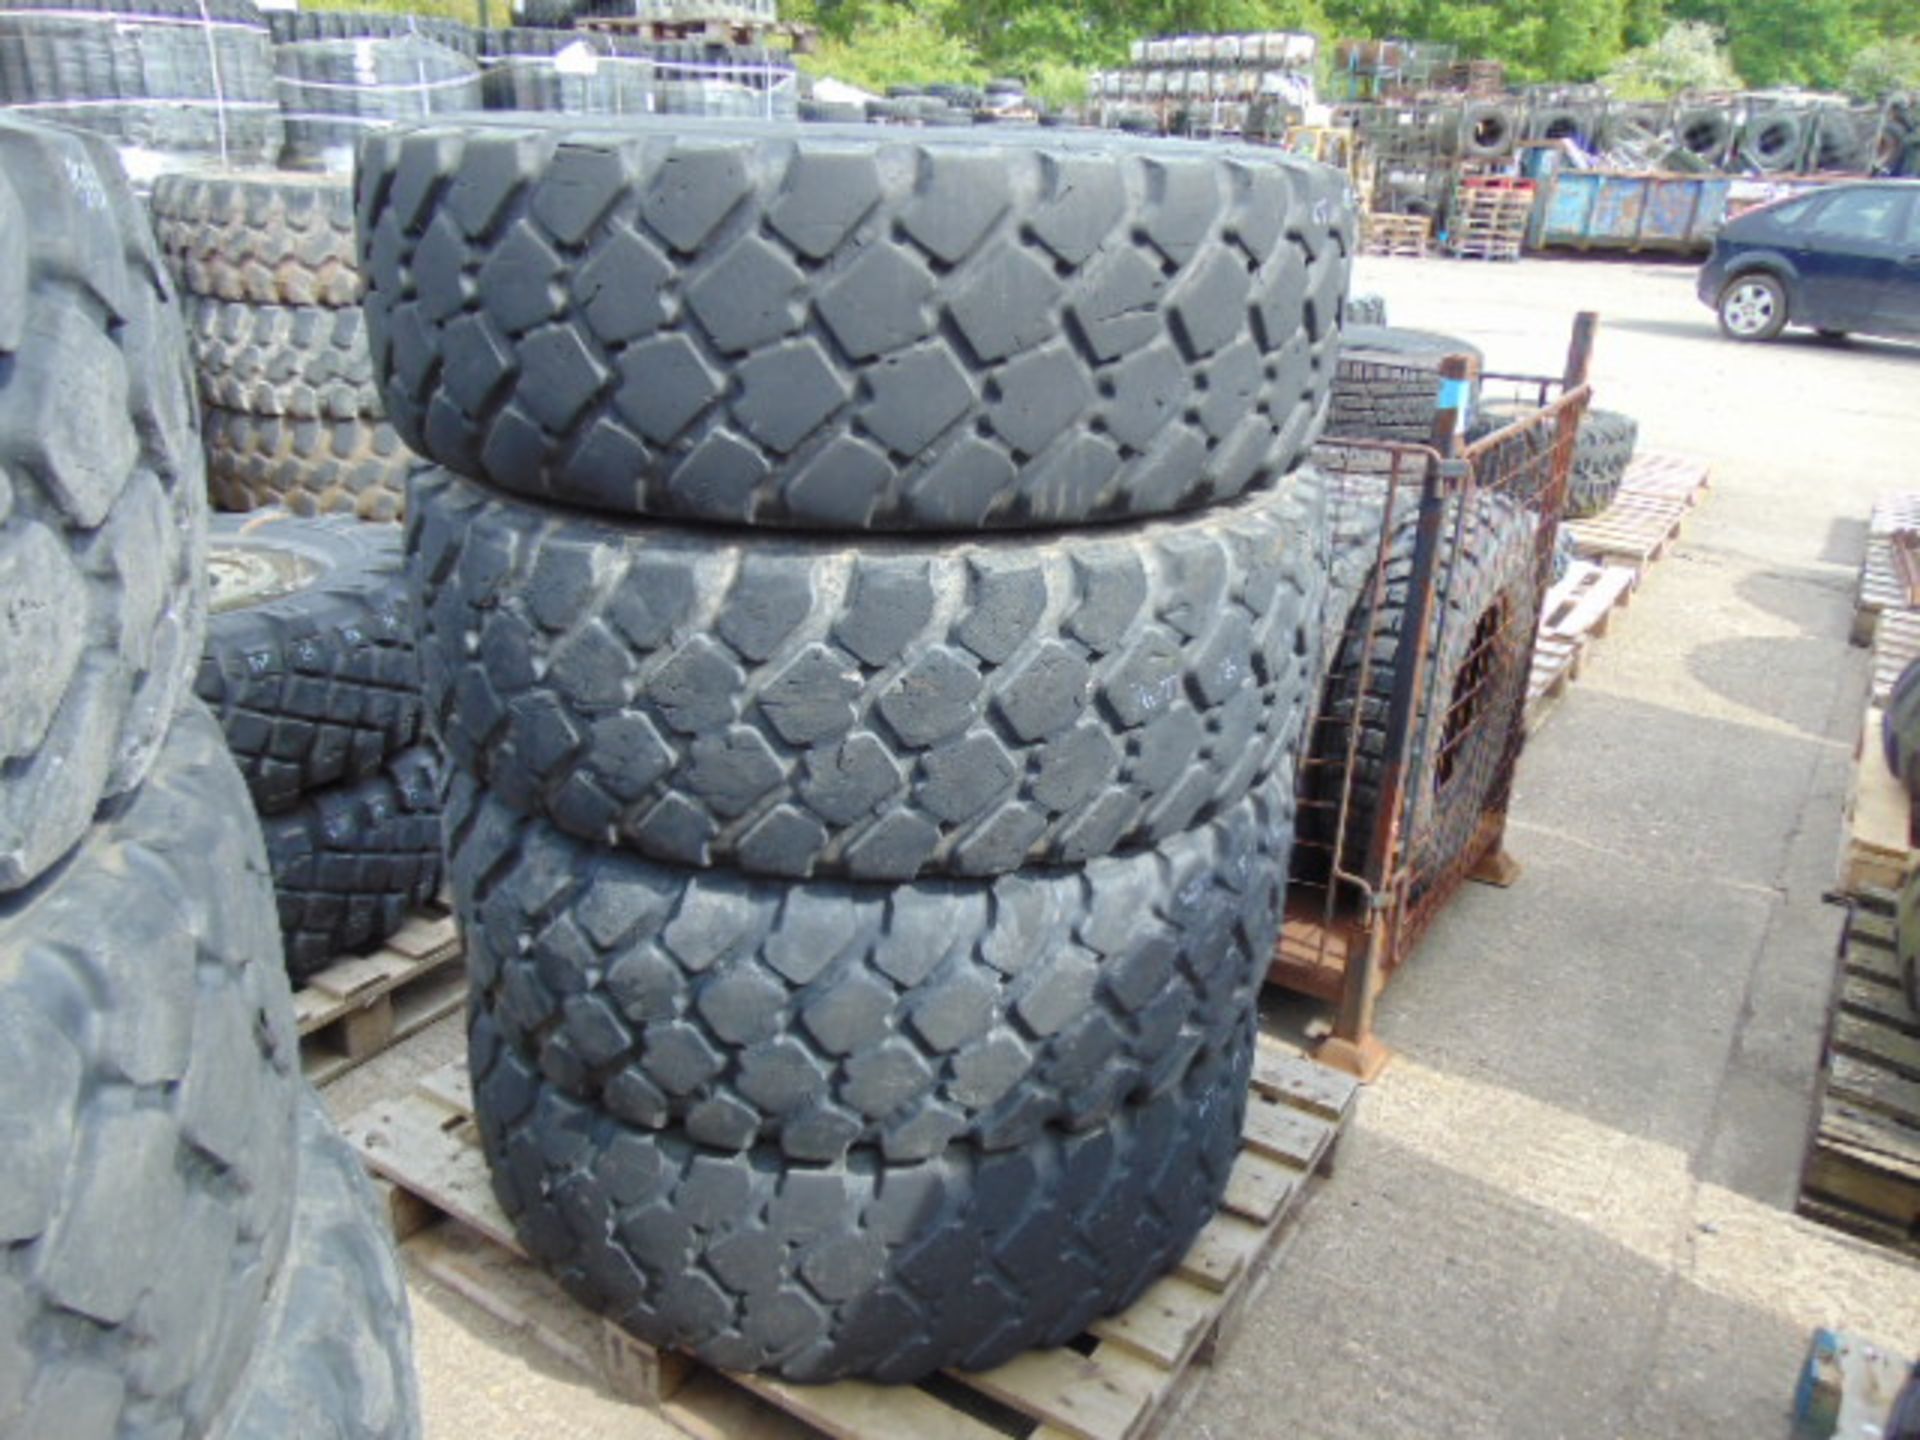 4 x Michelin 365/85 R20 XZL Tyres